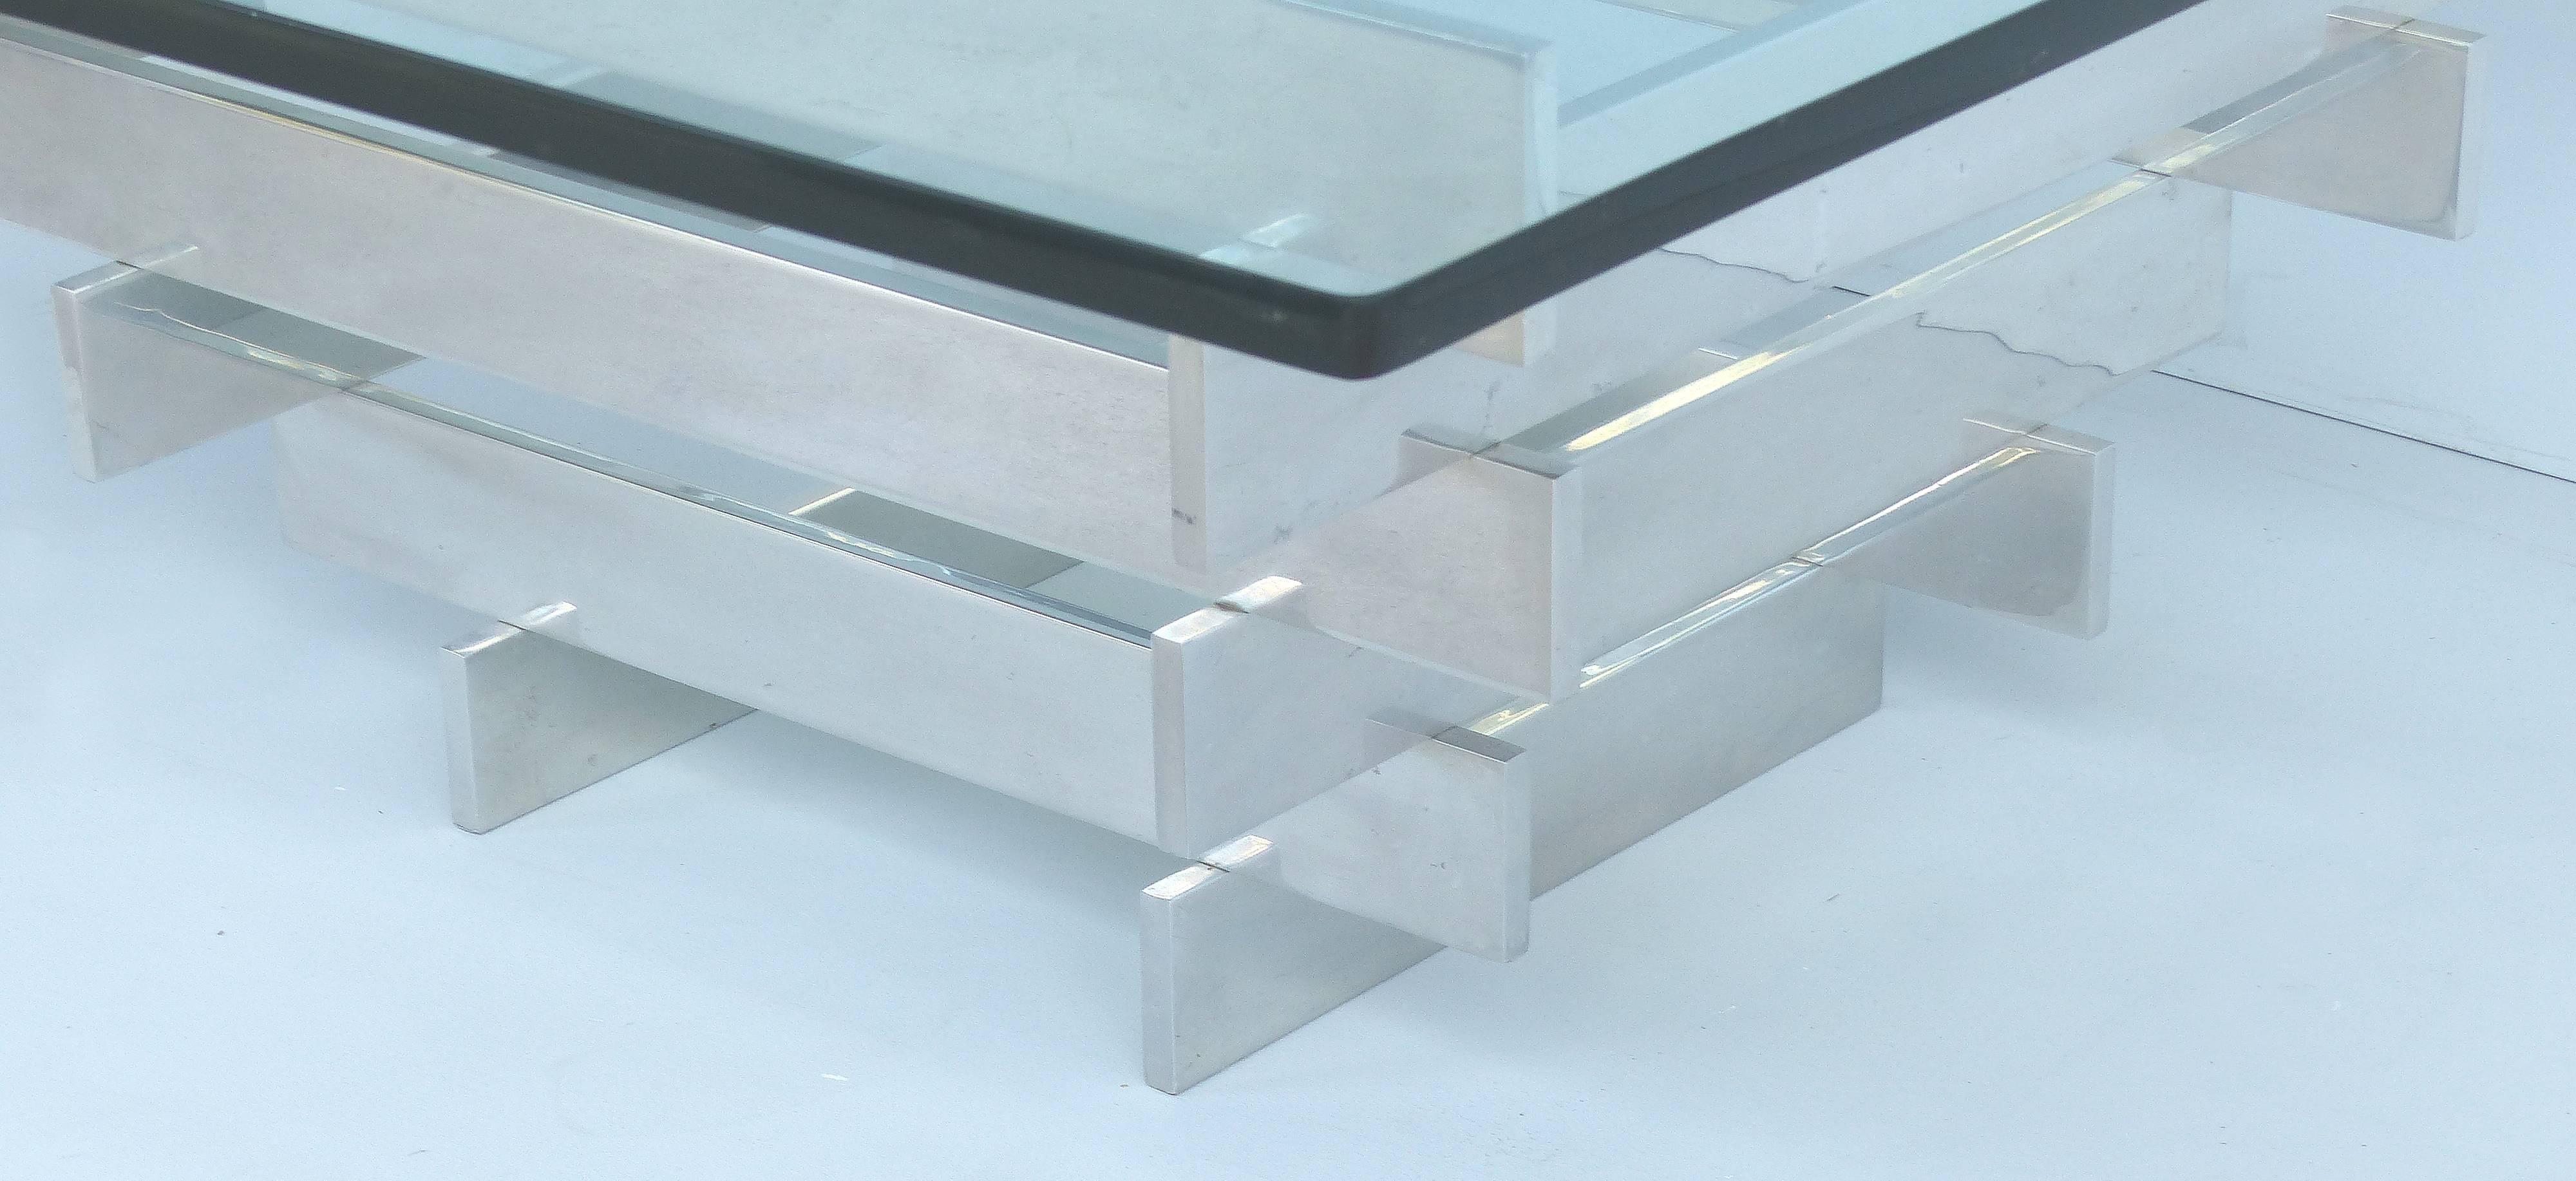 Table basse en aluminium et verre Paul Mayen pour Habitat

Nous vous proposons de considérer une table basse en aluminium et verre Paul Mayen pour Habitat stacked chrome. Cette pièce est un bel exemple du travail des designers des années 1970.
 